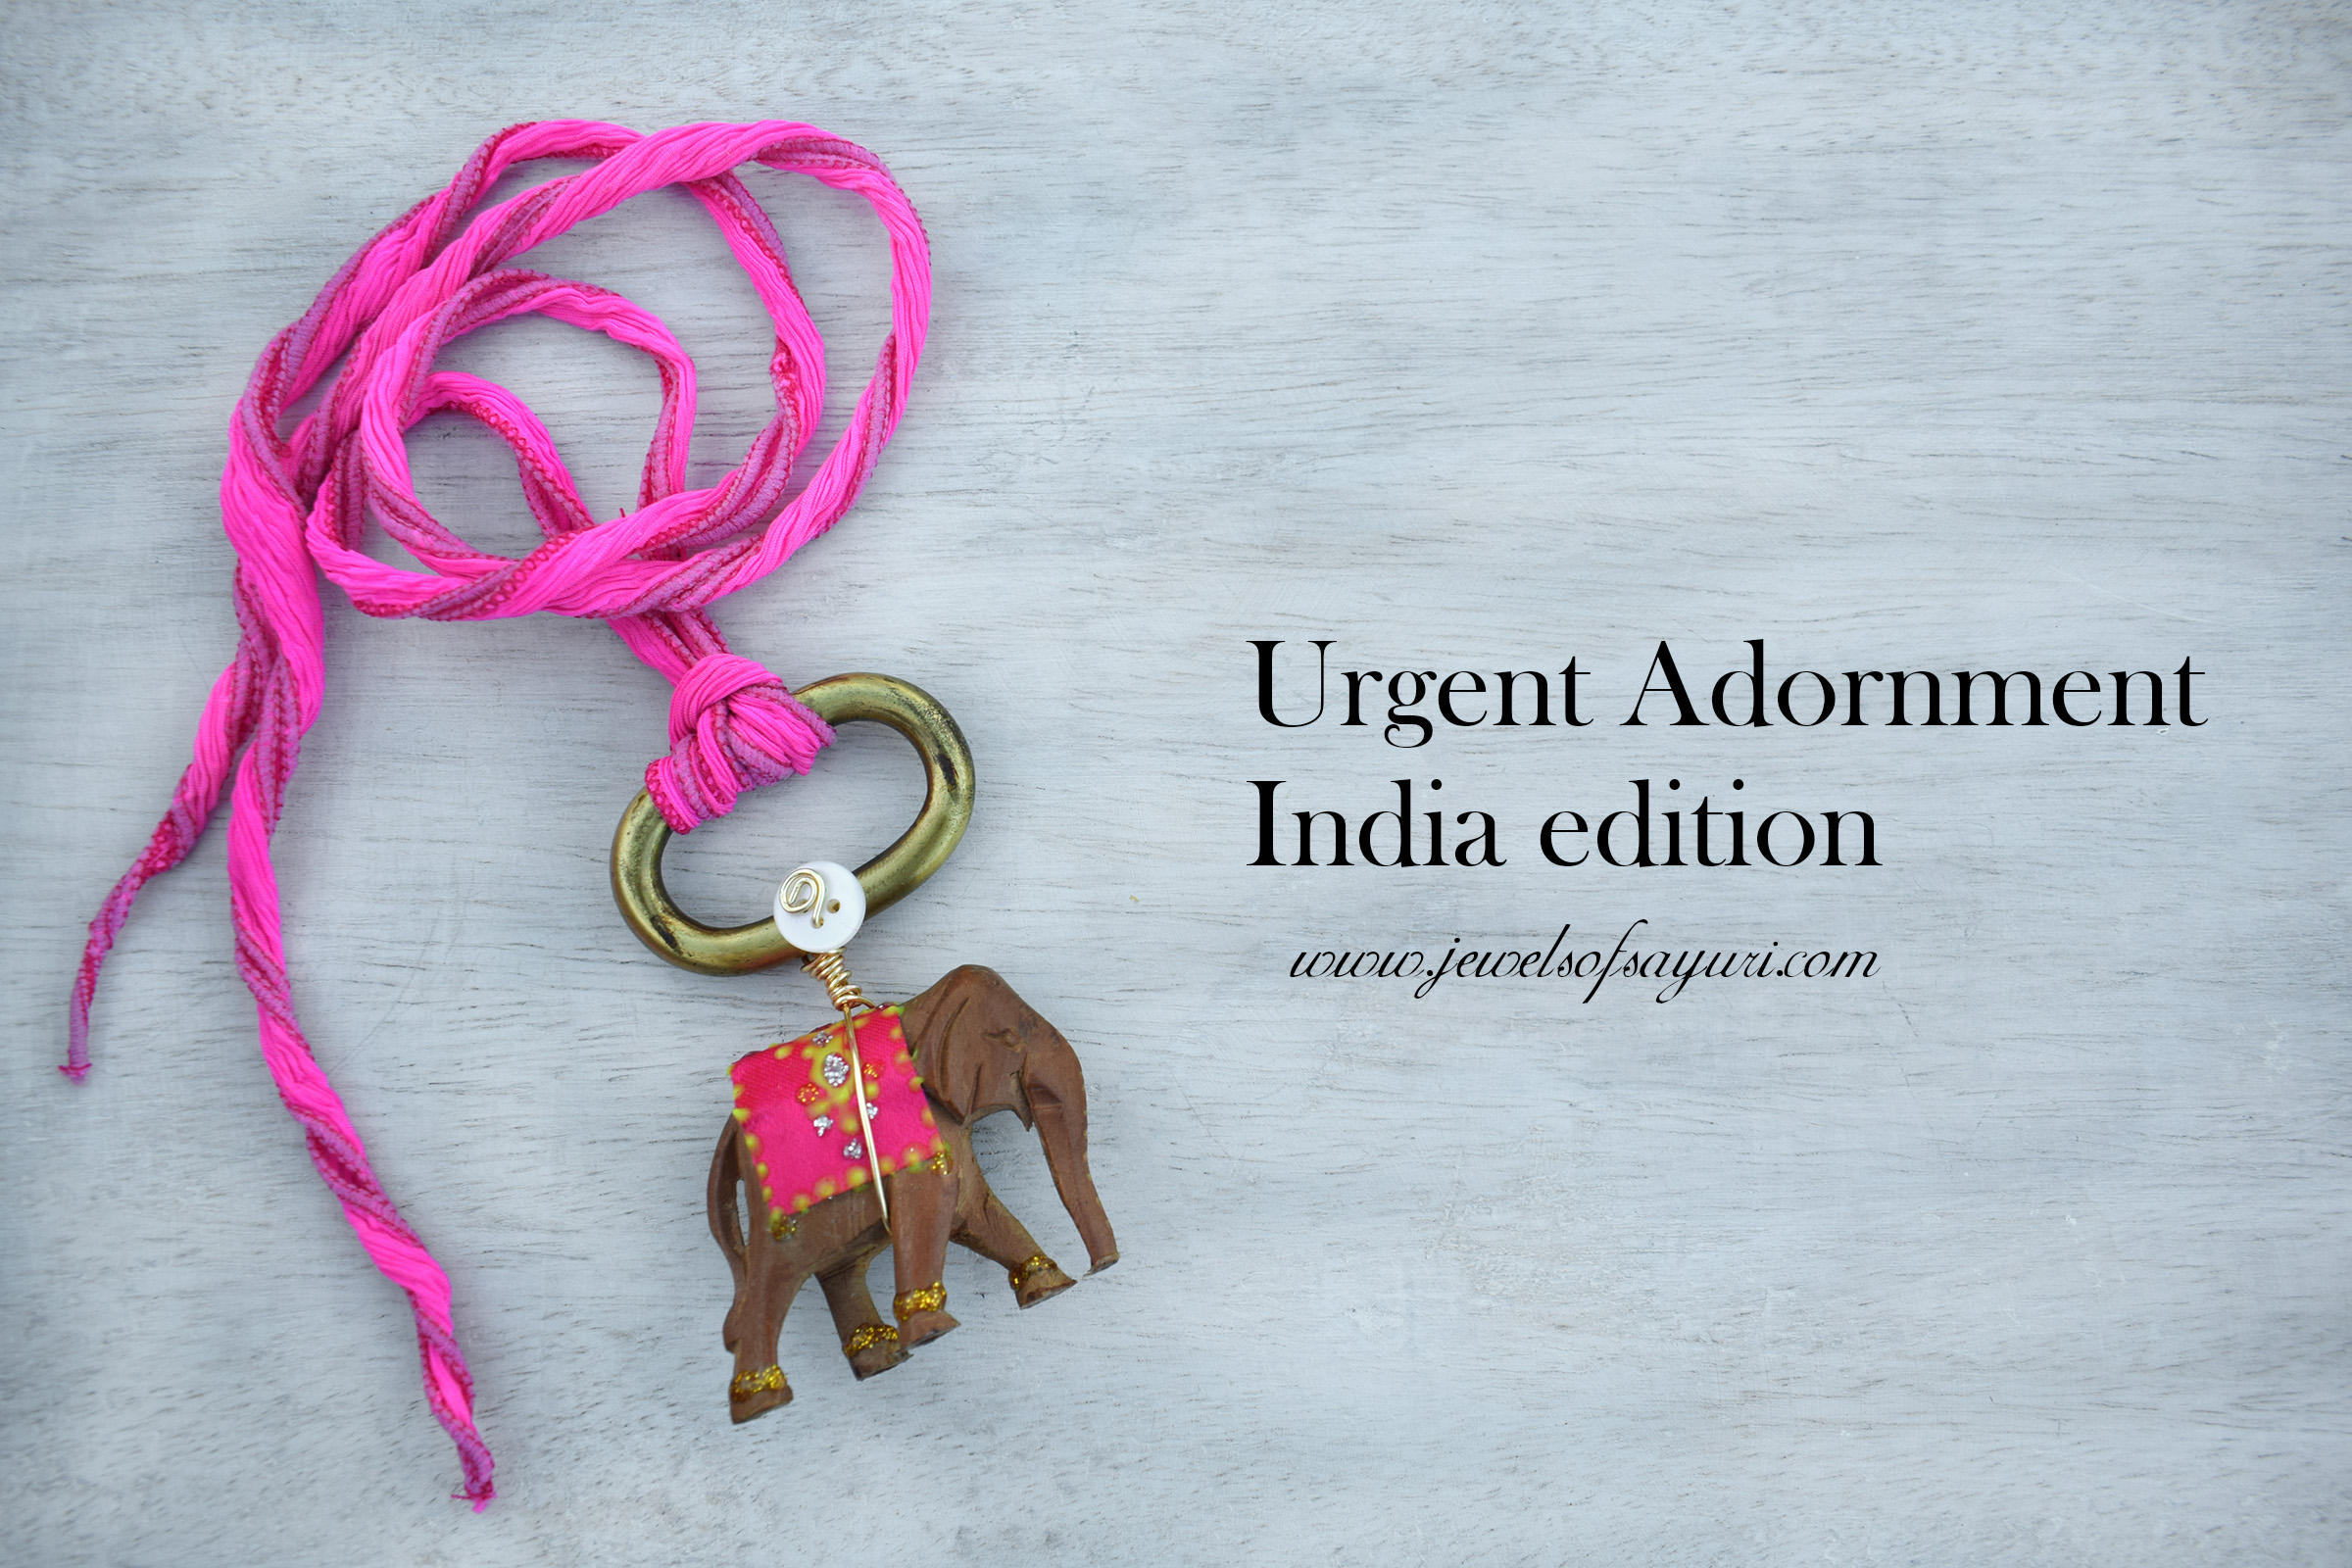 Urgent Adornment India